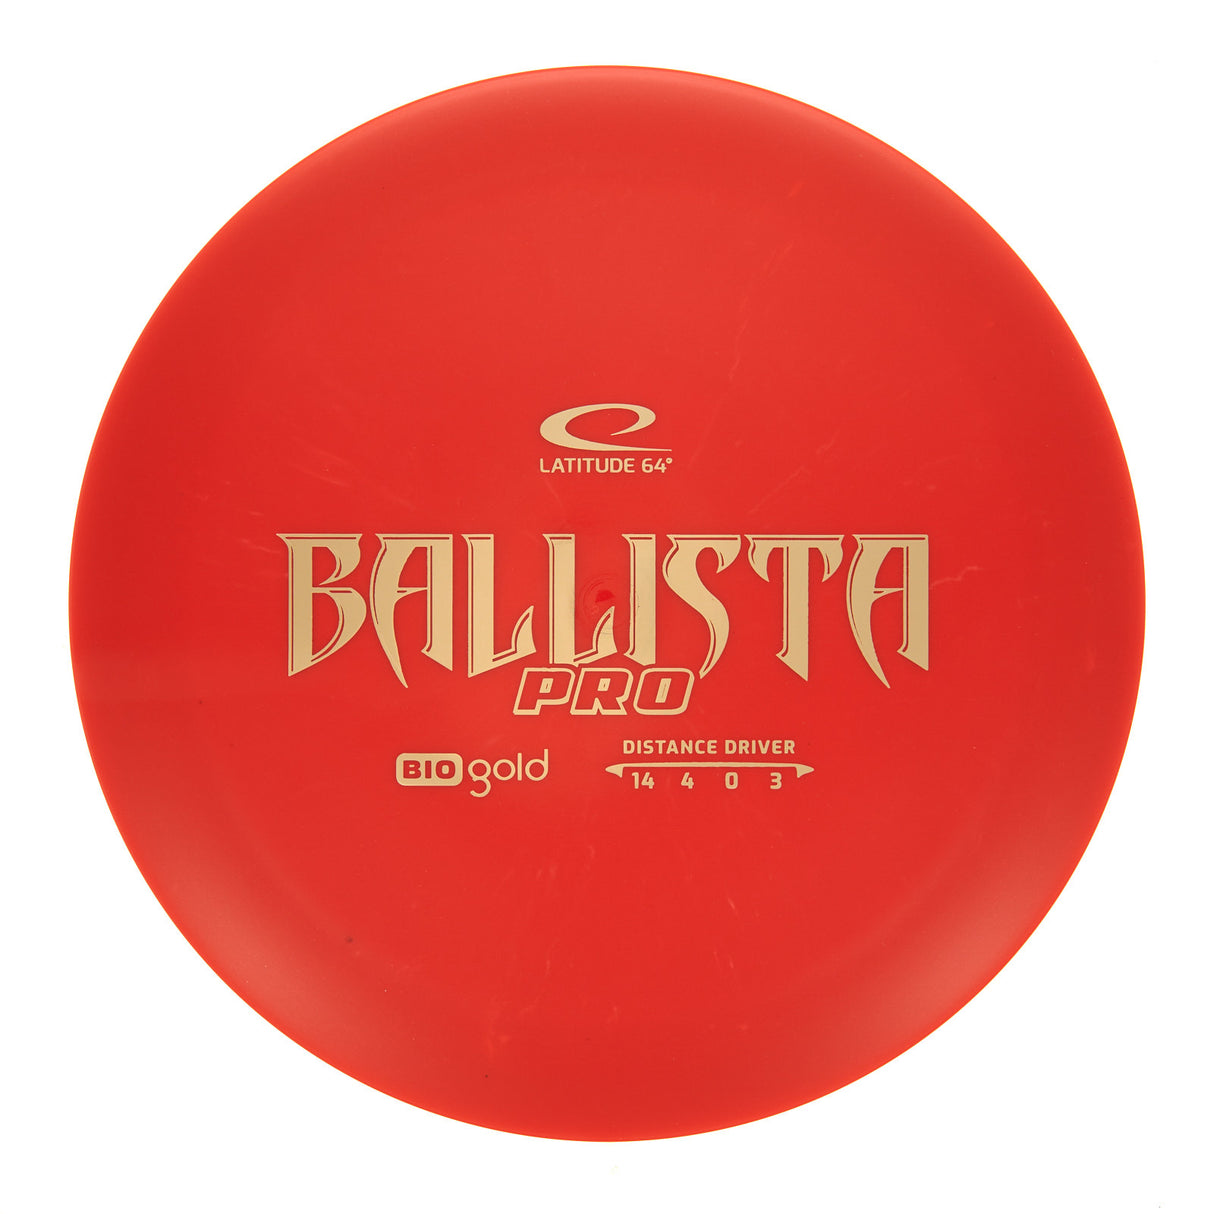 Latitude 64 Ballista Pro - Bio Gold 171g | Style 0004